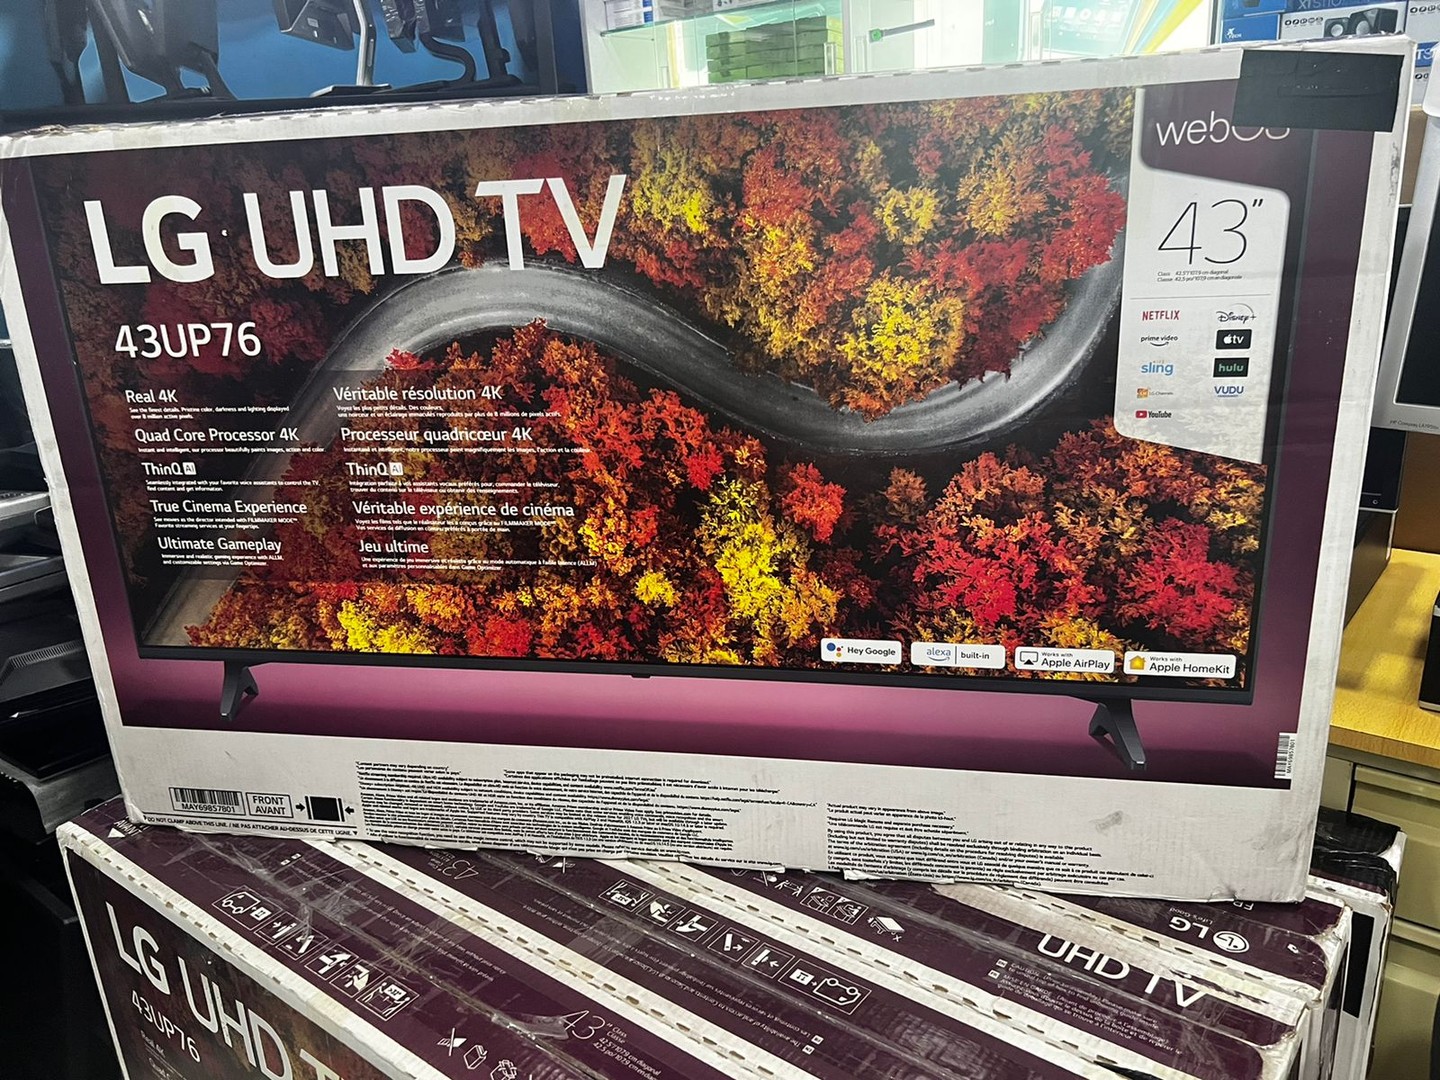 Televisor Smart Tv LG de 43 pulgadas UHD 4K Serie 43UP76 1